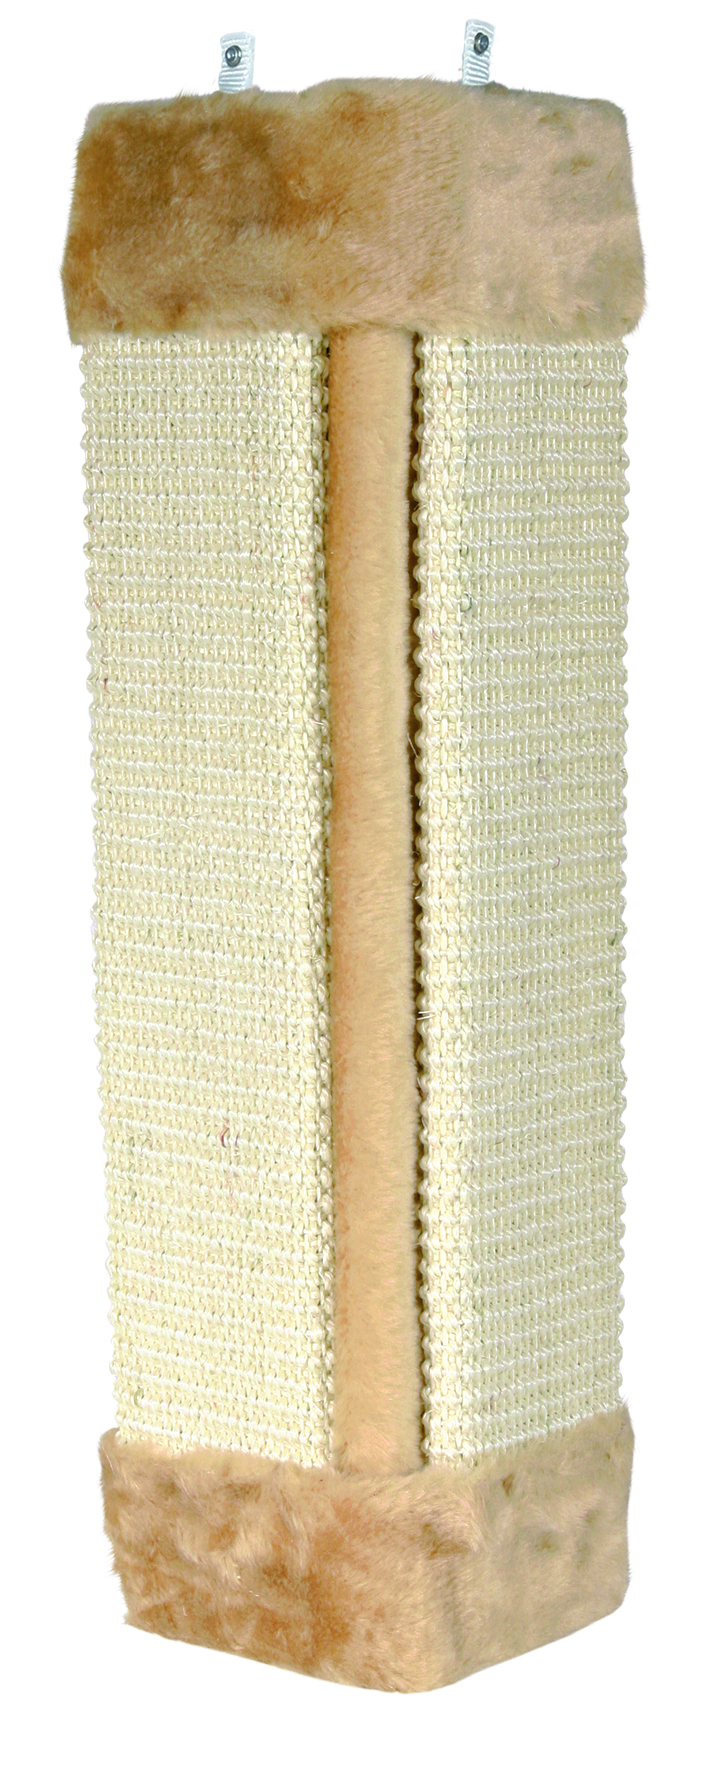 Kratzbrett für Zimmerecken 23 × 49 x 23 cm, natur/beige